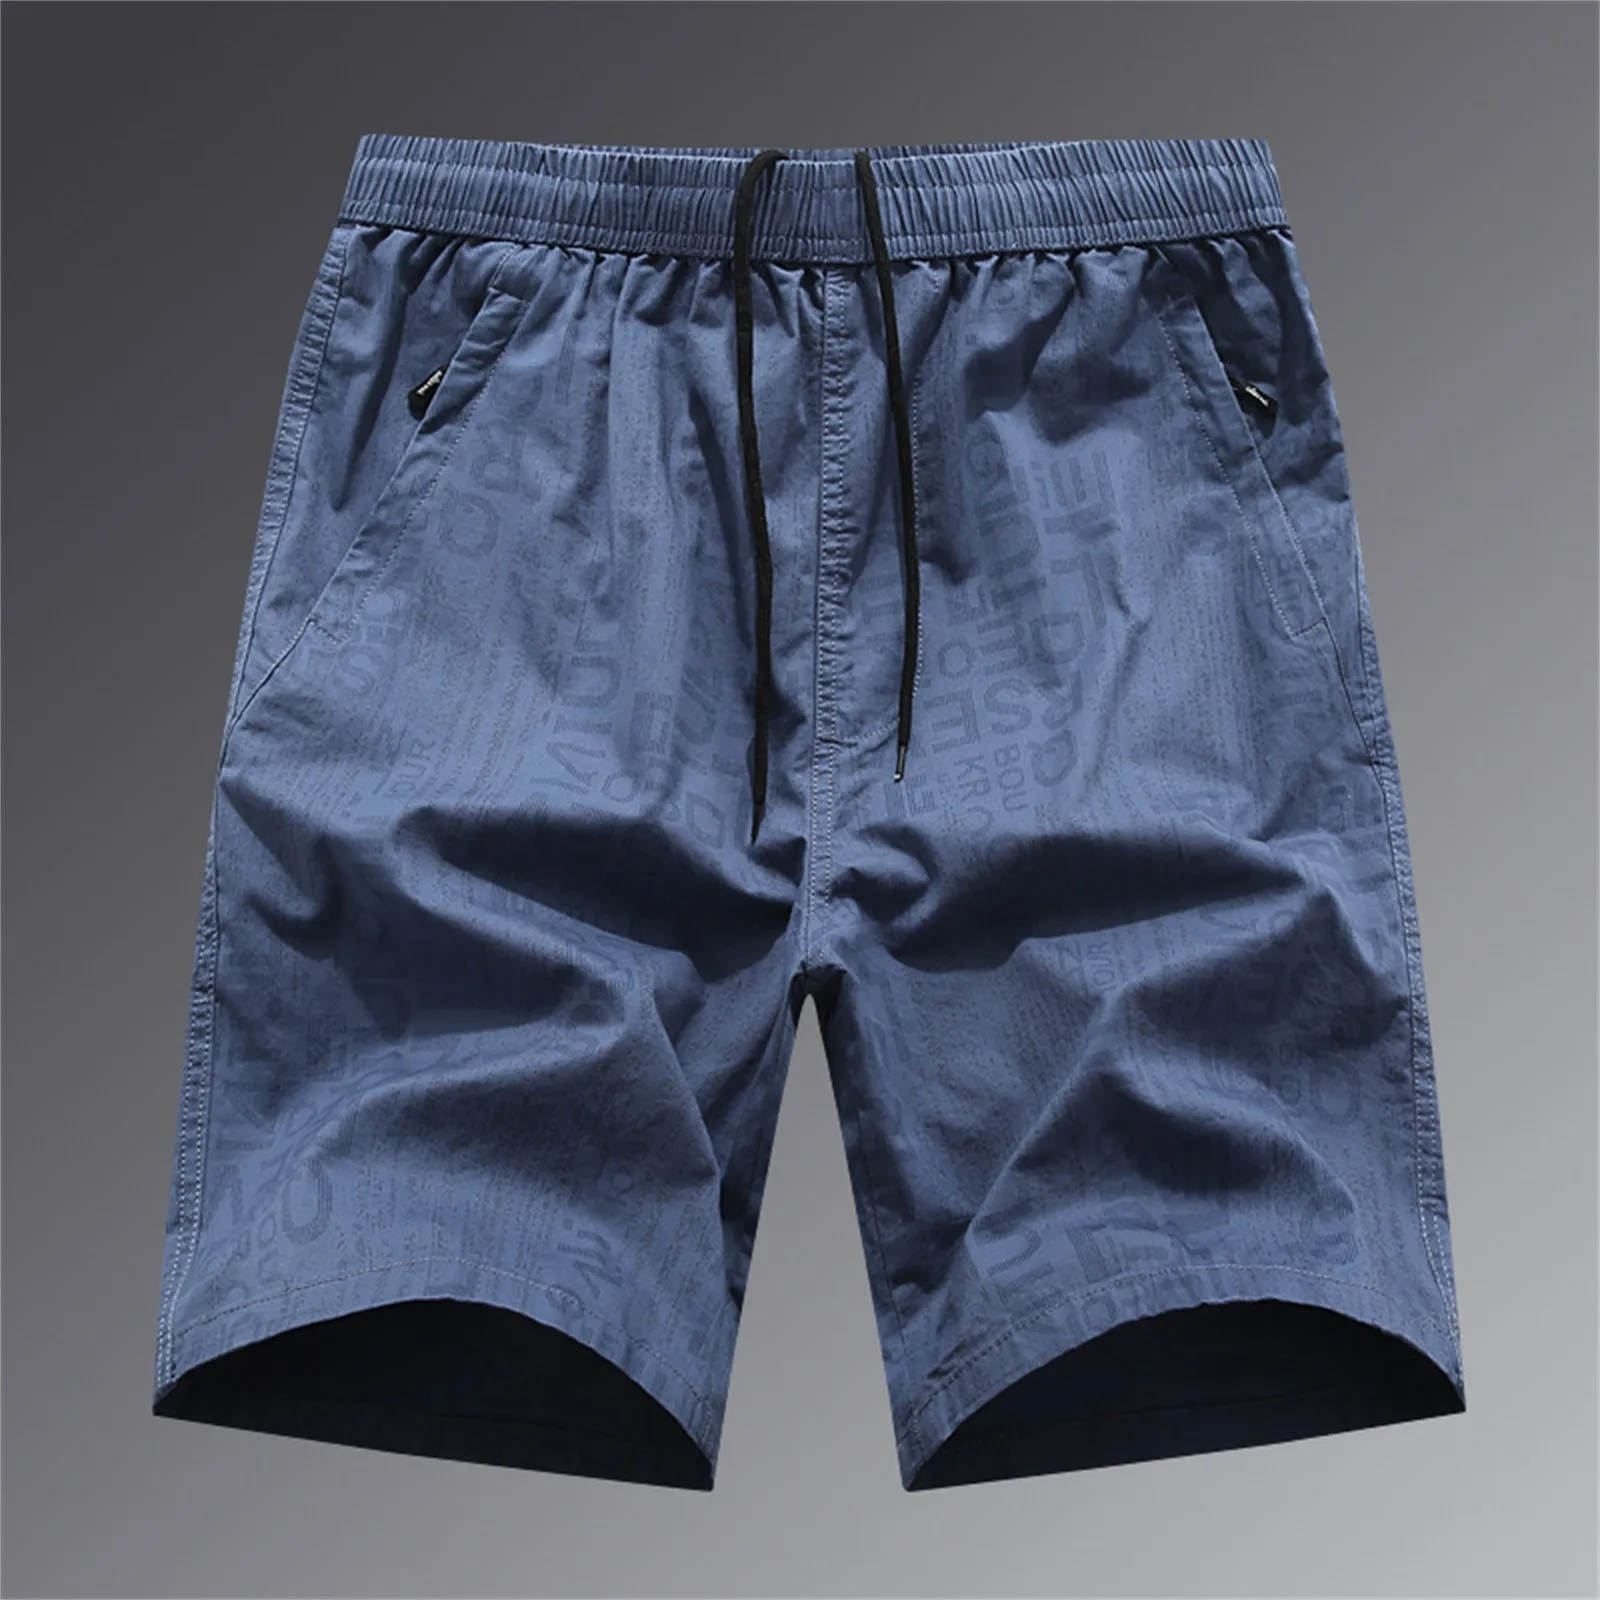 Mens החדש קיץ בחוץ מזדמן חופשי טלאים סרבל מכנסיים קצרים מכנסיים